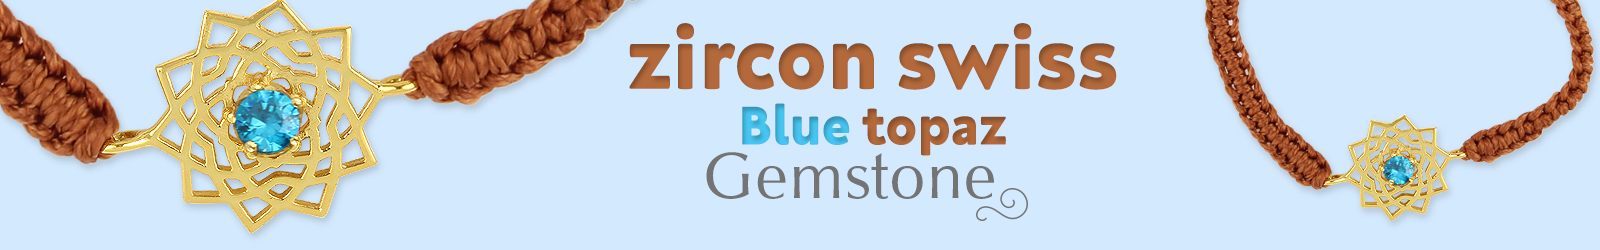 Buy zircon swiss blue topaz gemstone jewelry at cheap price